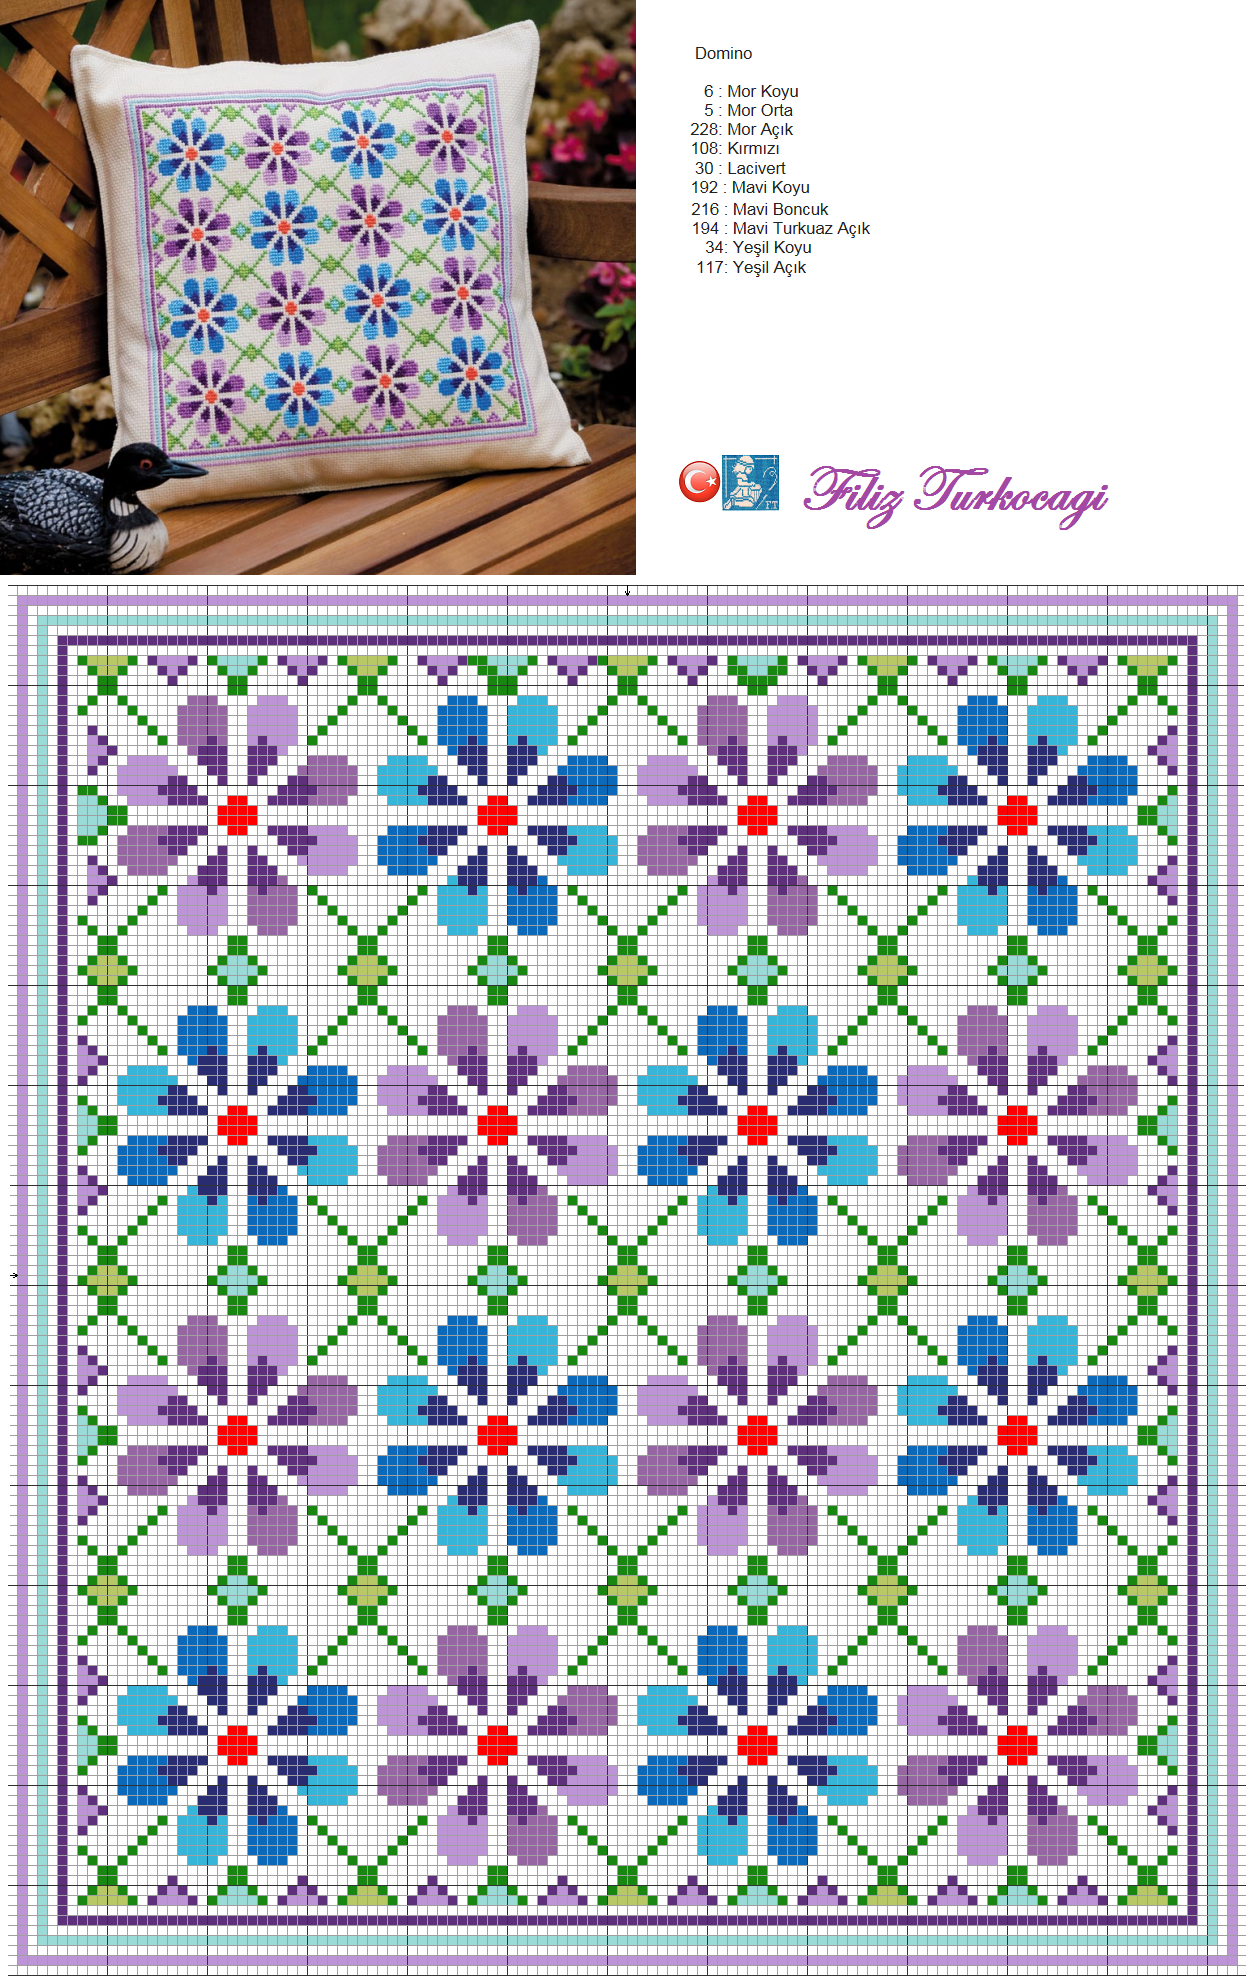 Stitched pattern photo